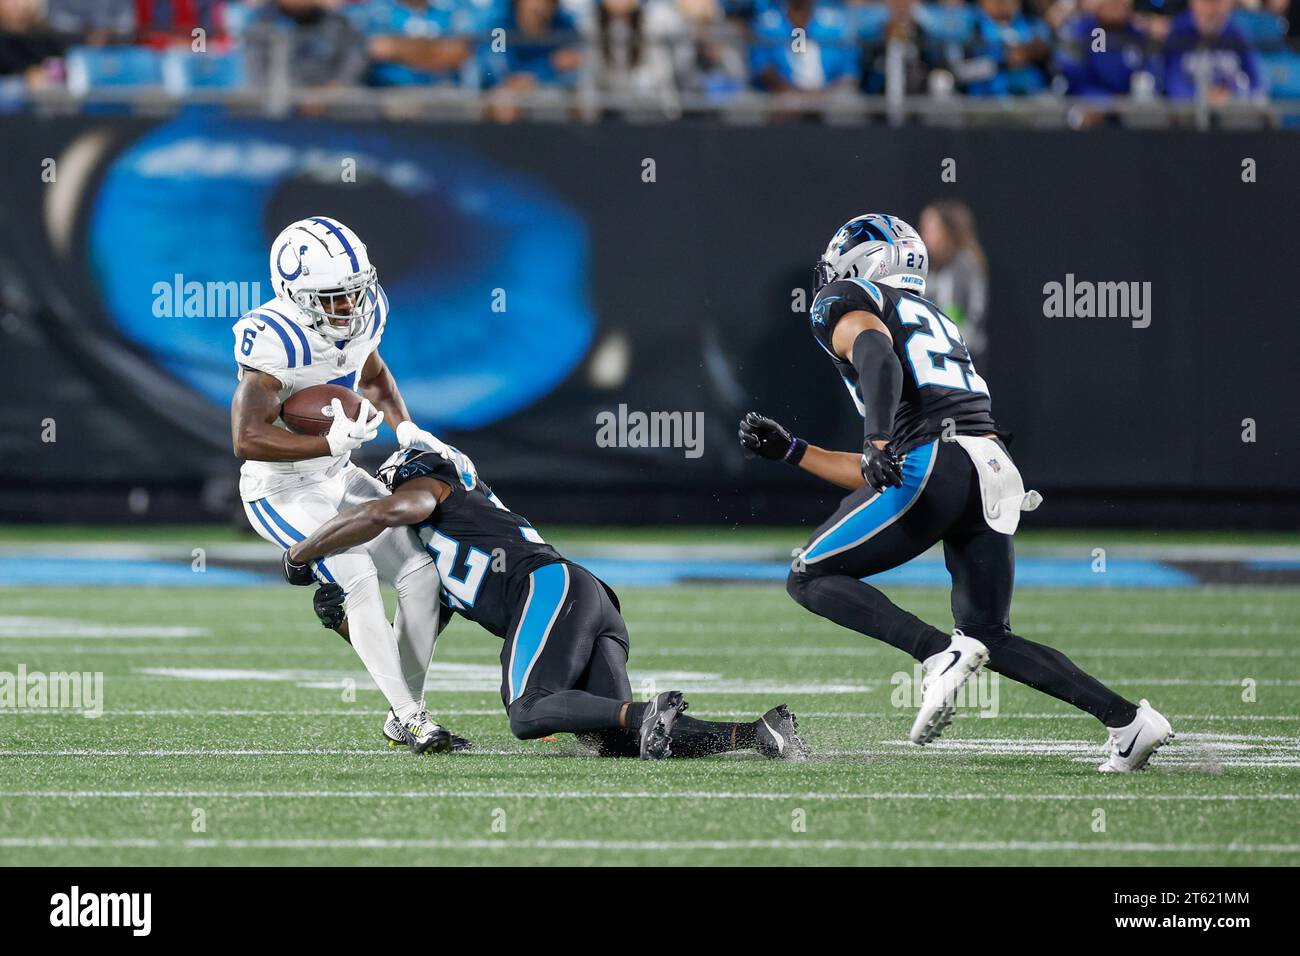 Charlotte, NC, USA: Il wide receiver degli Indianapolis Colts Isaiah McKenzie (6) fa una ricezione e viene placcato dal cornerback dei Carolina Panthers Dicaprio Boo Foto Stock